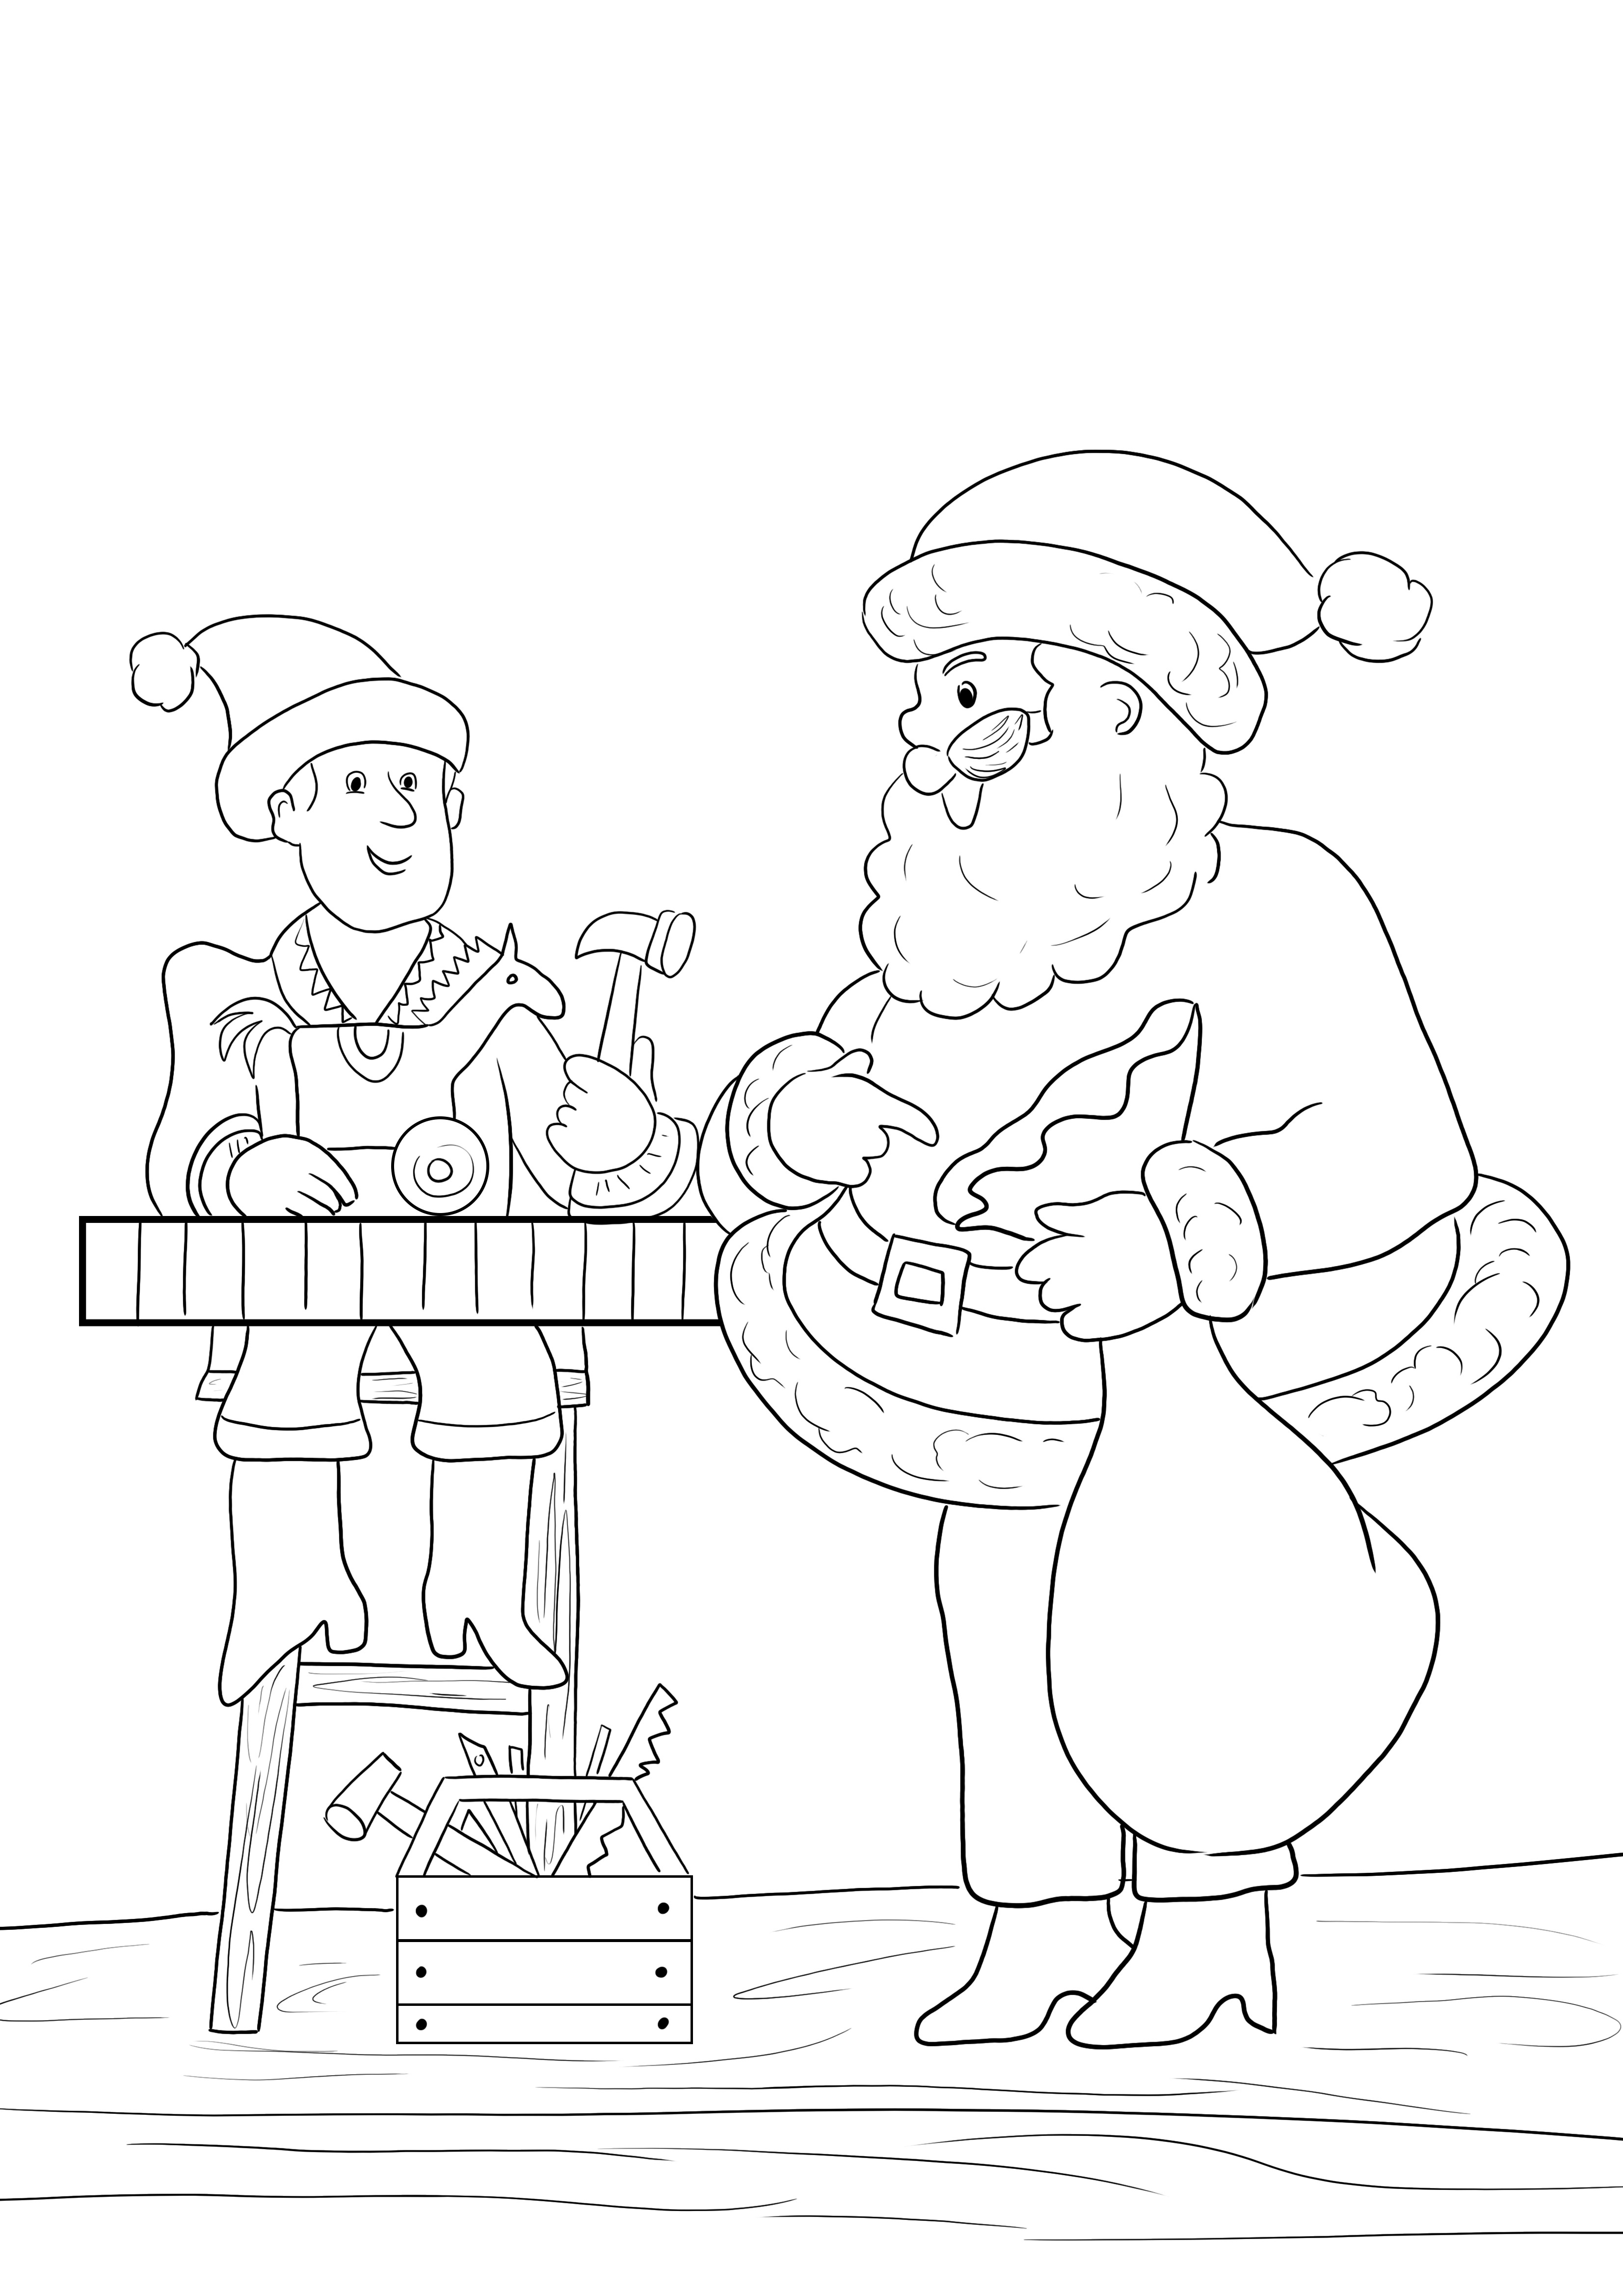 Pagina da colorare dell'officina di Babbo Natale da stampare o scaricare gratuitamente per i bambini